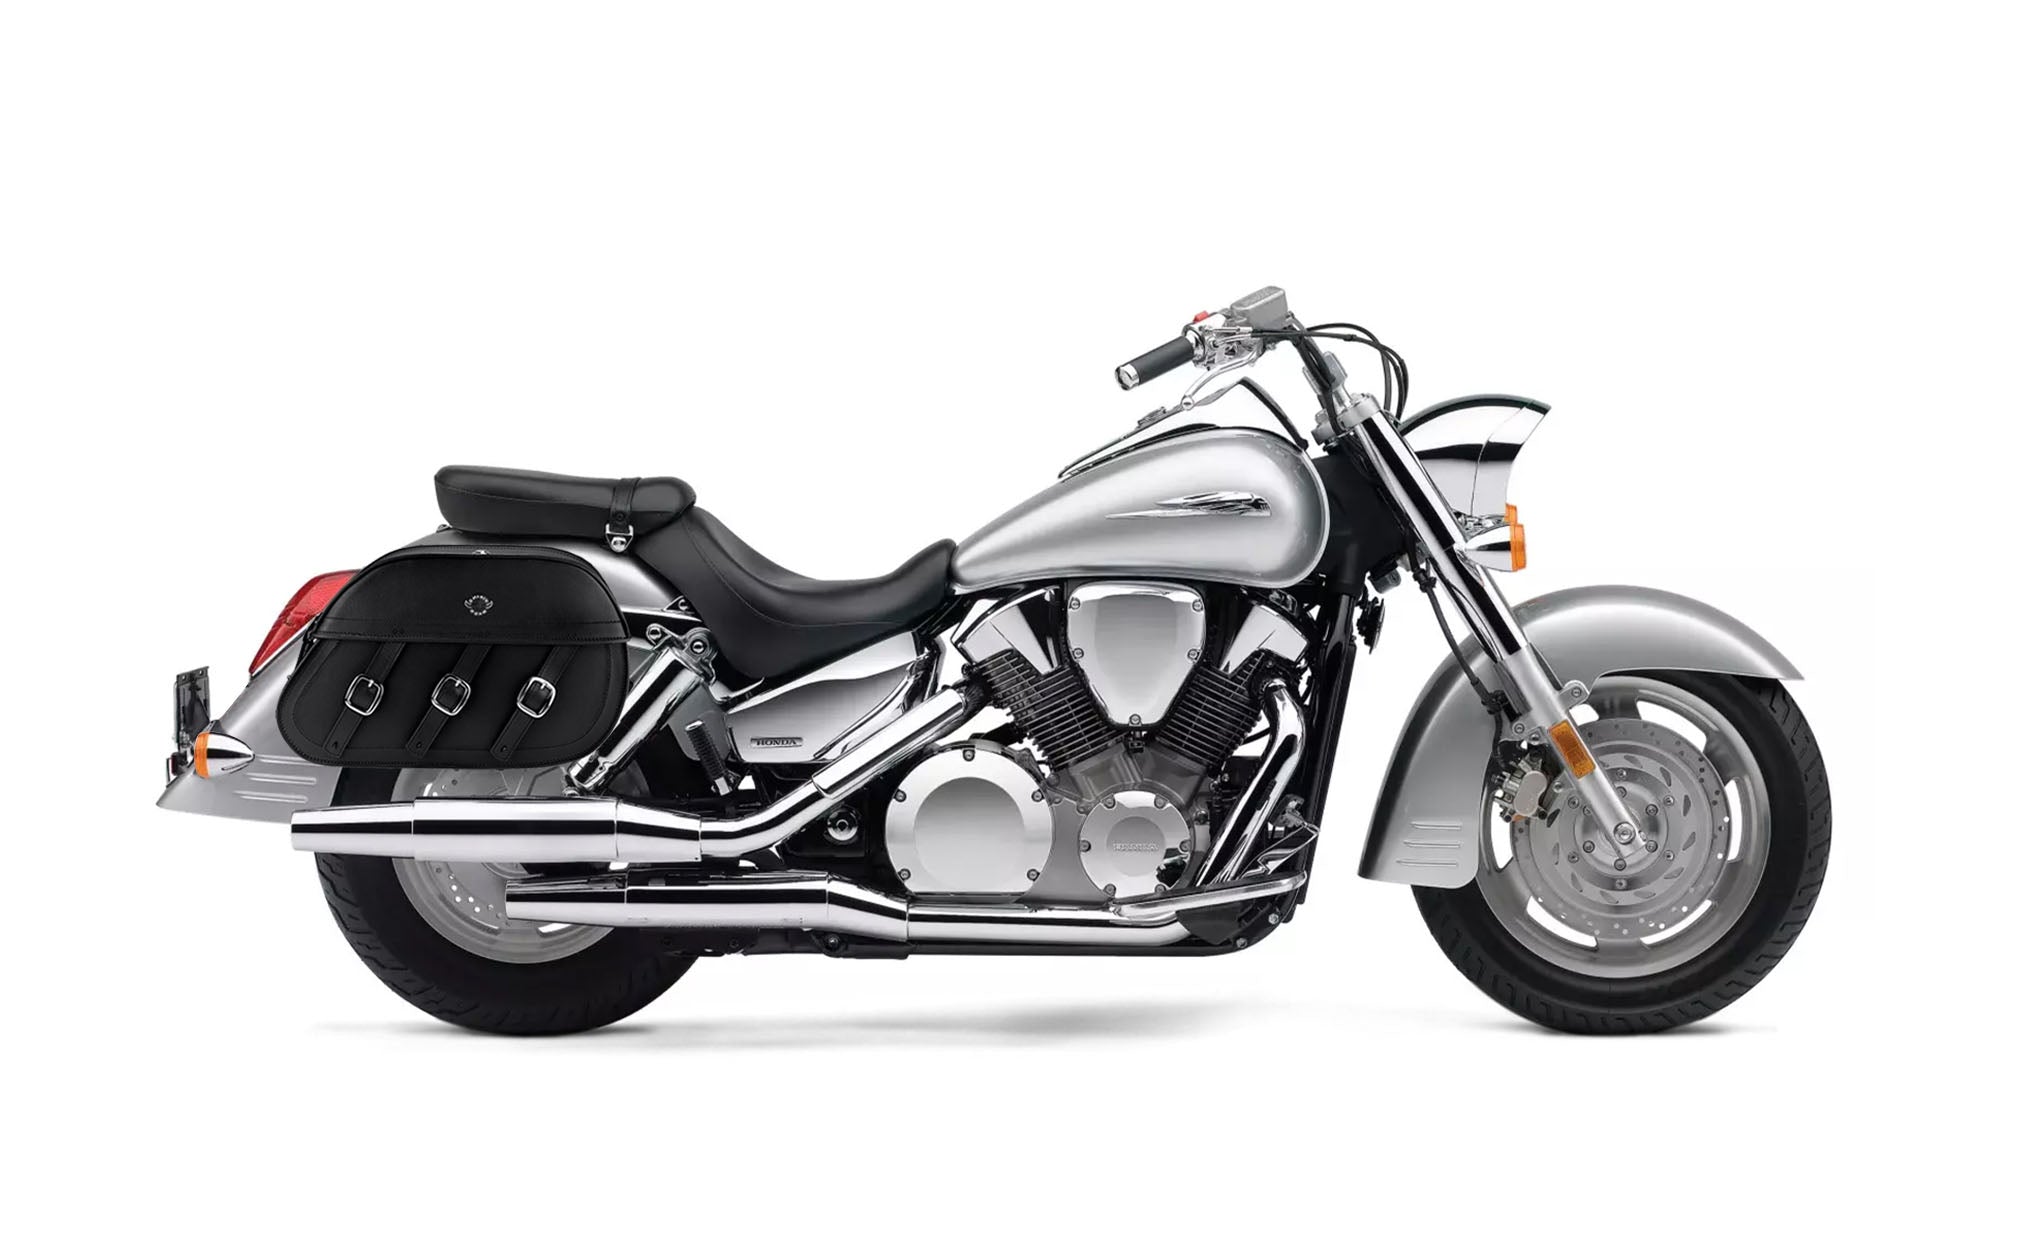 Viking Trianon Extra Large Honda Vtx 1300 S Leather Motorcycle Saddlebags on Bike Photo @expand